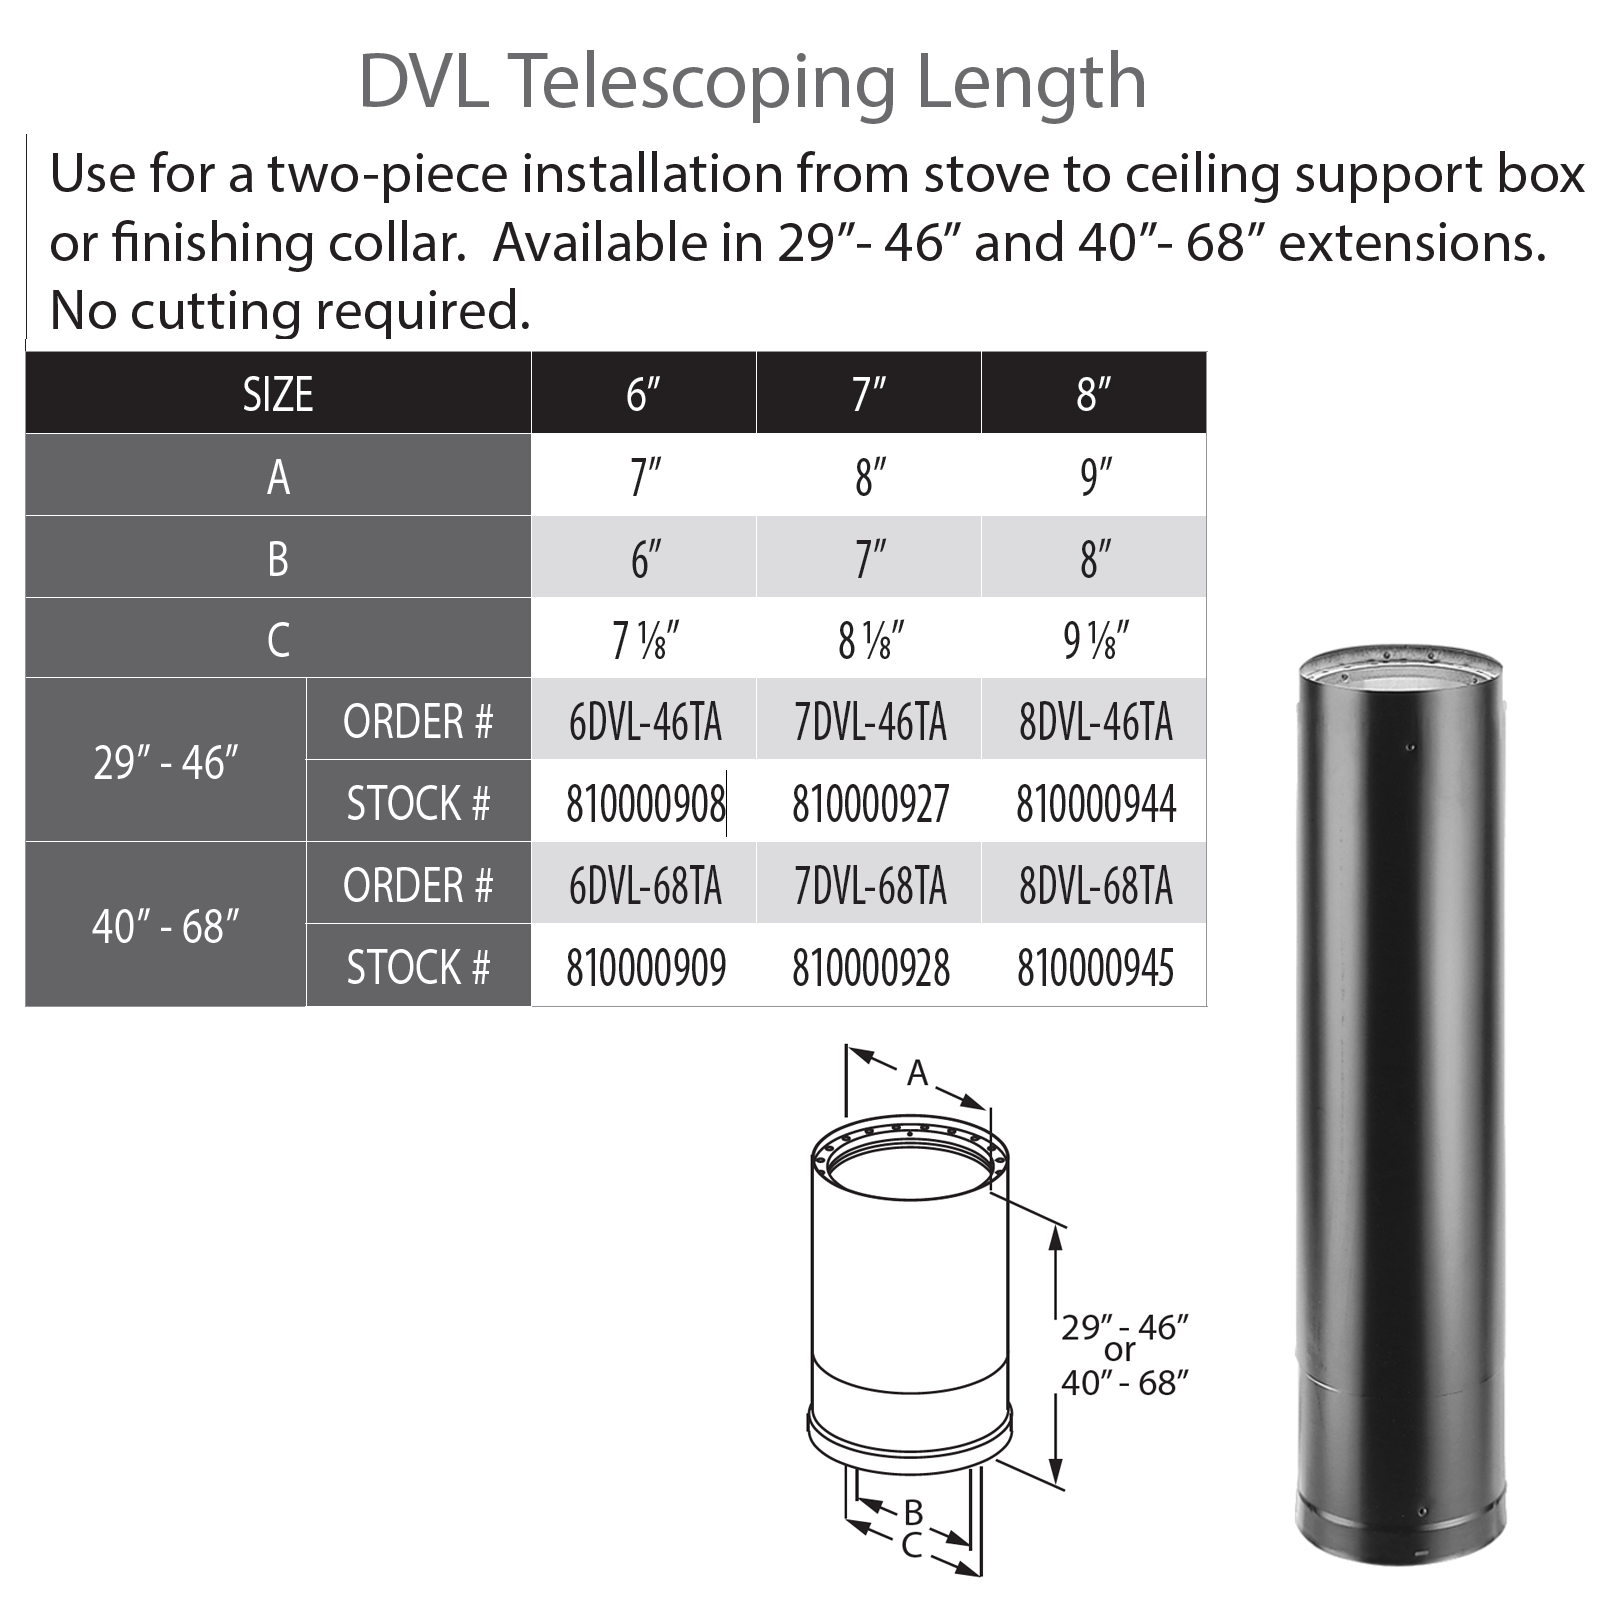 DuraVent DVL 7" Diameter Telescoping Length 29" - 46" | 7DVL-46TA